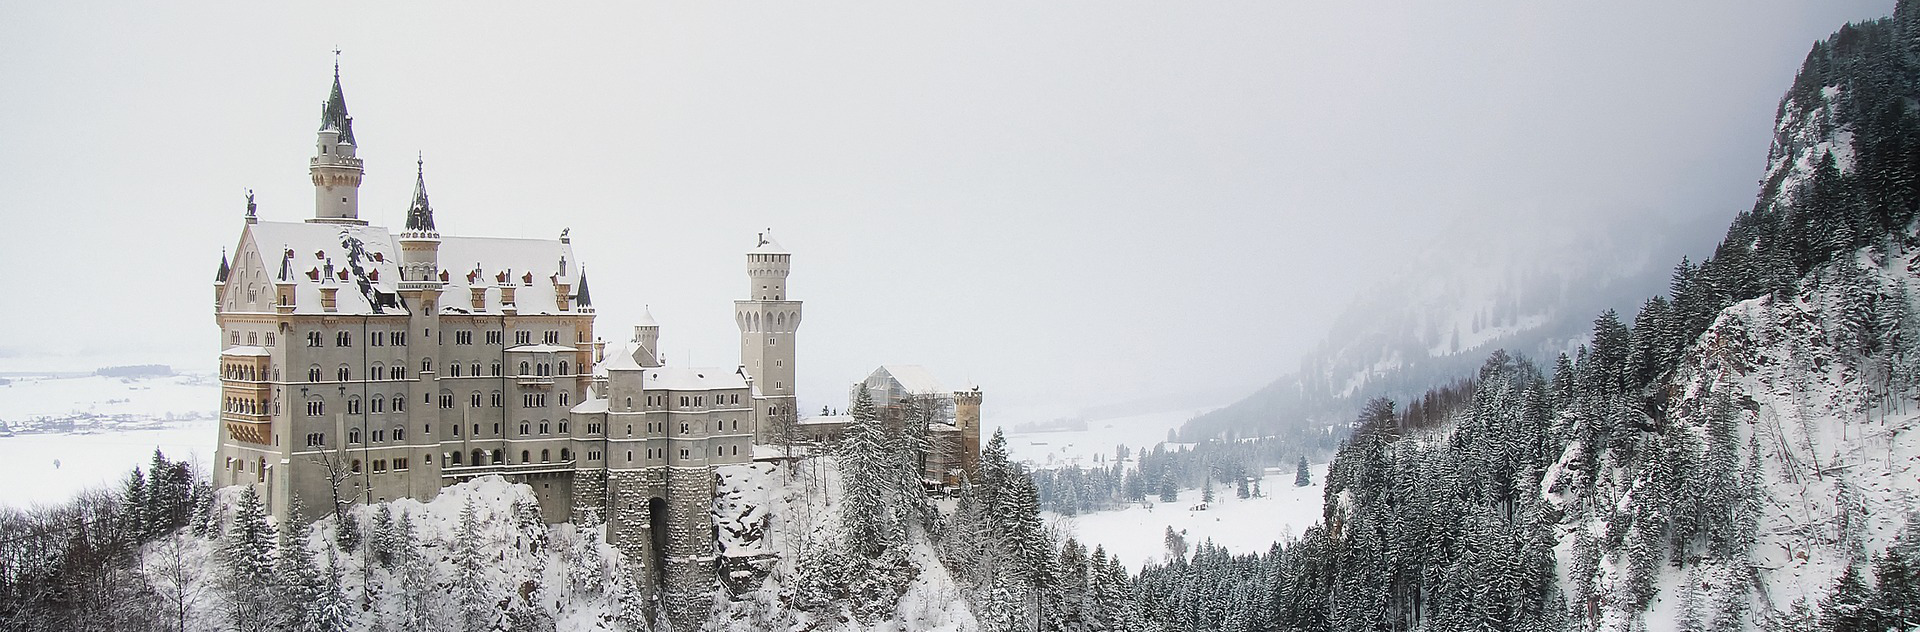 Neuschwanstein slott